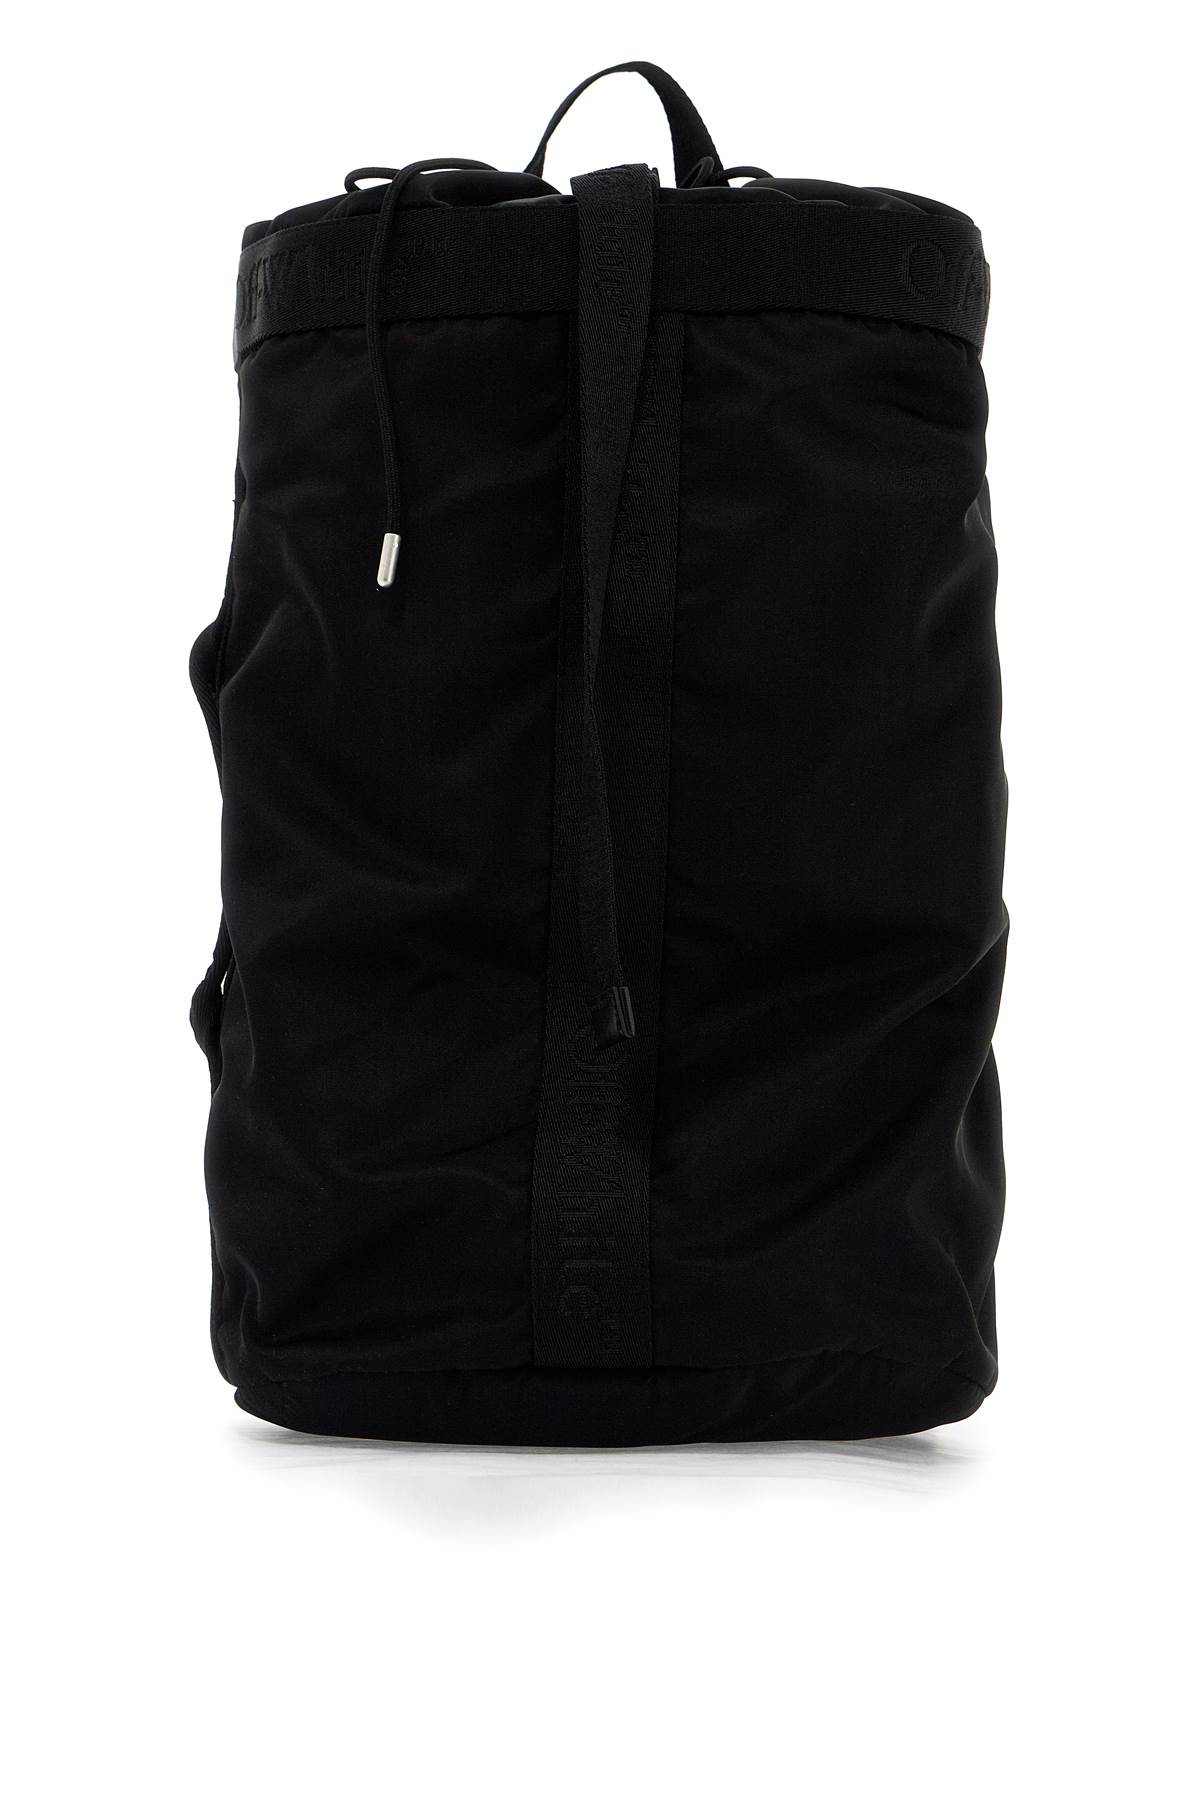 Nylon Backpack For Everyday